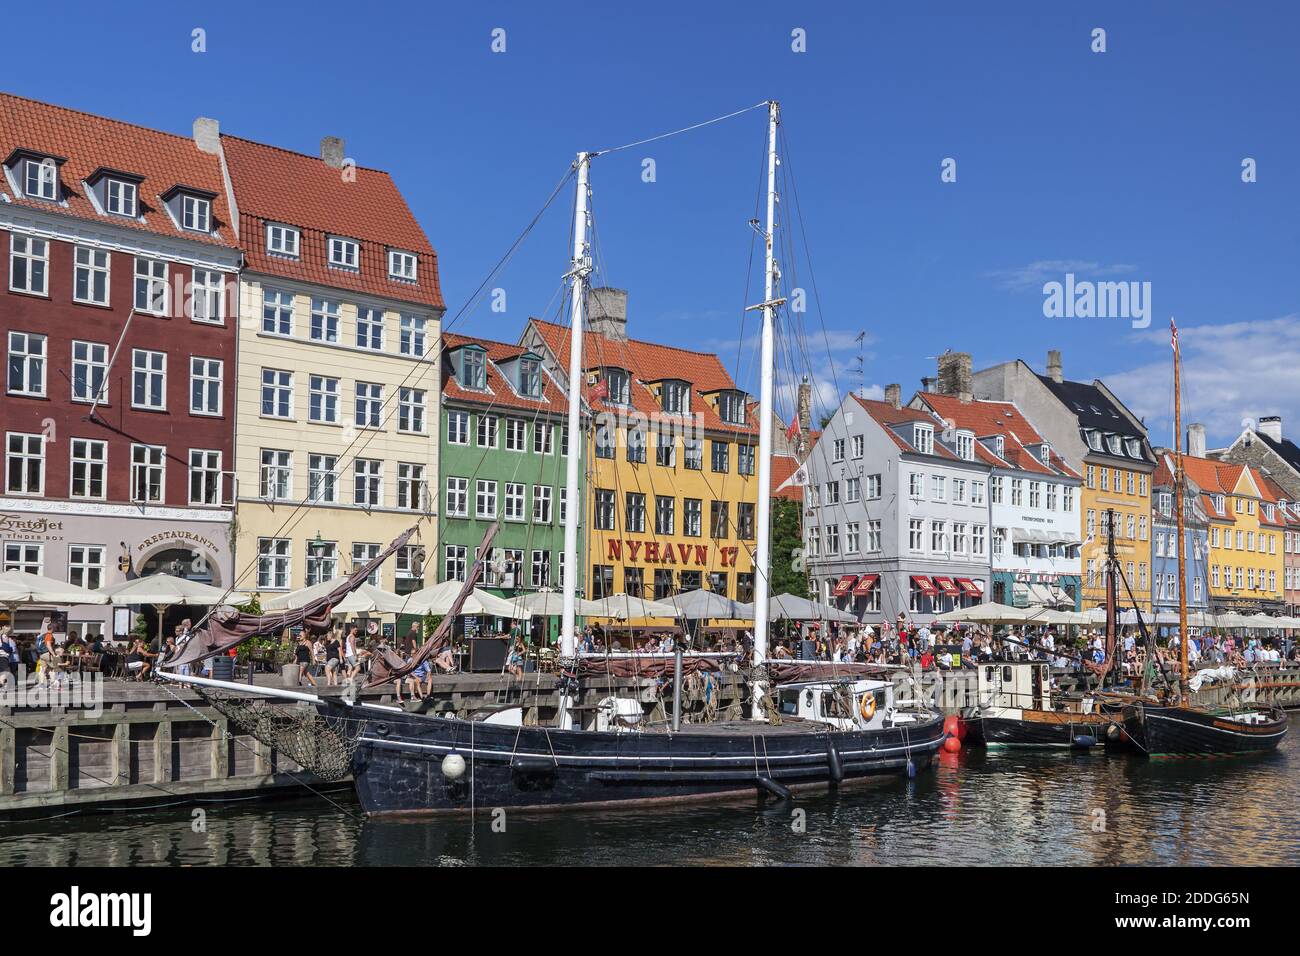 Géographie / Voyage, Danemark, Copenhague, voilier sur le canal de Nyhavn à Copenhague, Additional-Rights-Clearance-Info-not-available Banque D'Images